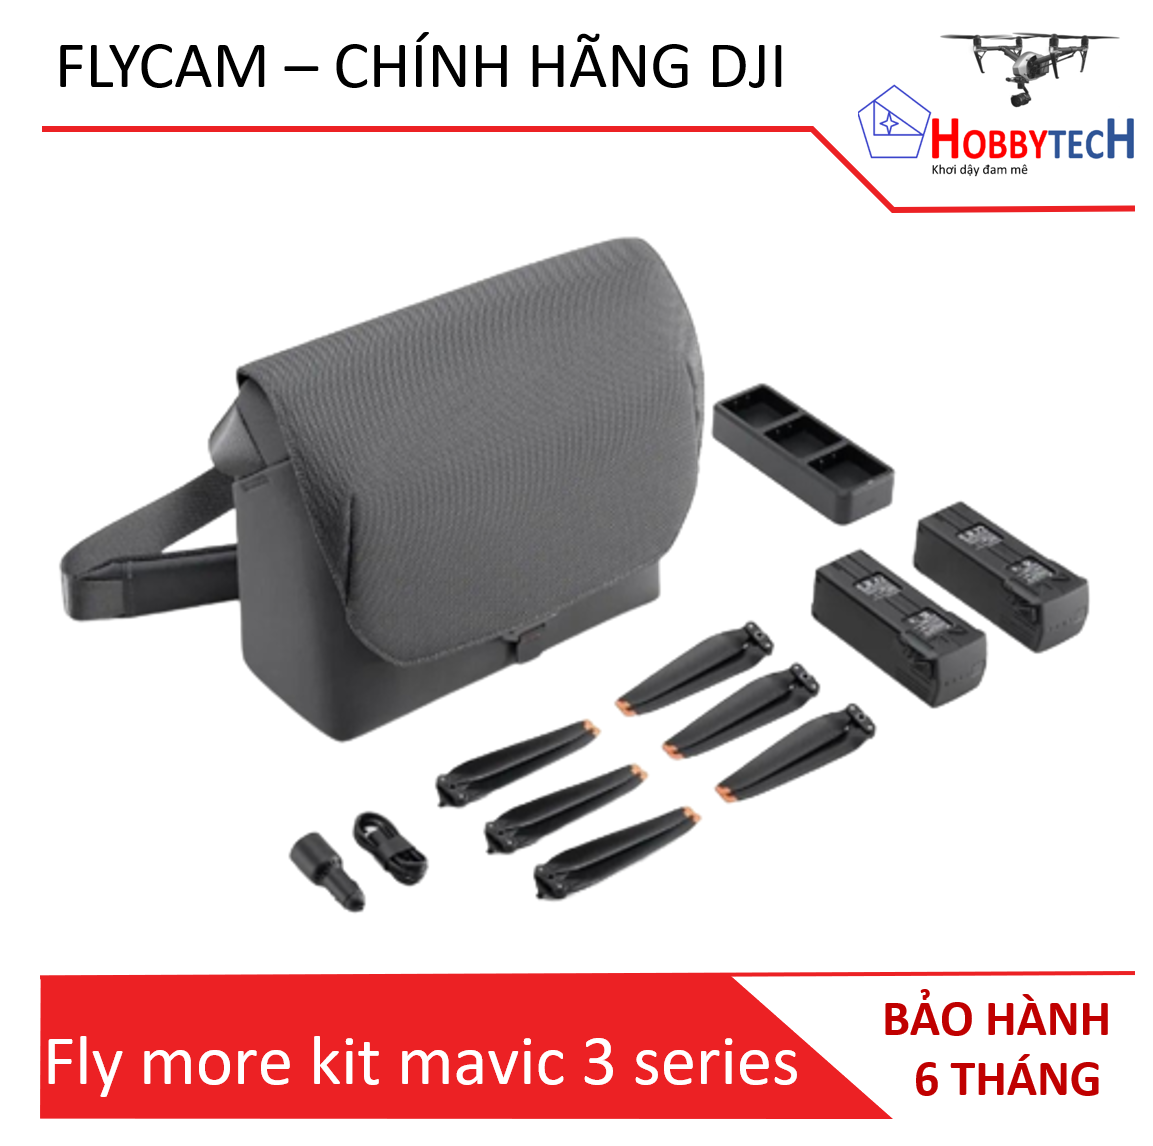 Fly more kit mavic 3 cũ (Shoulder Bag) – chính hãng DJI